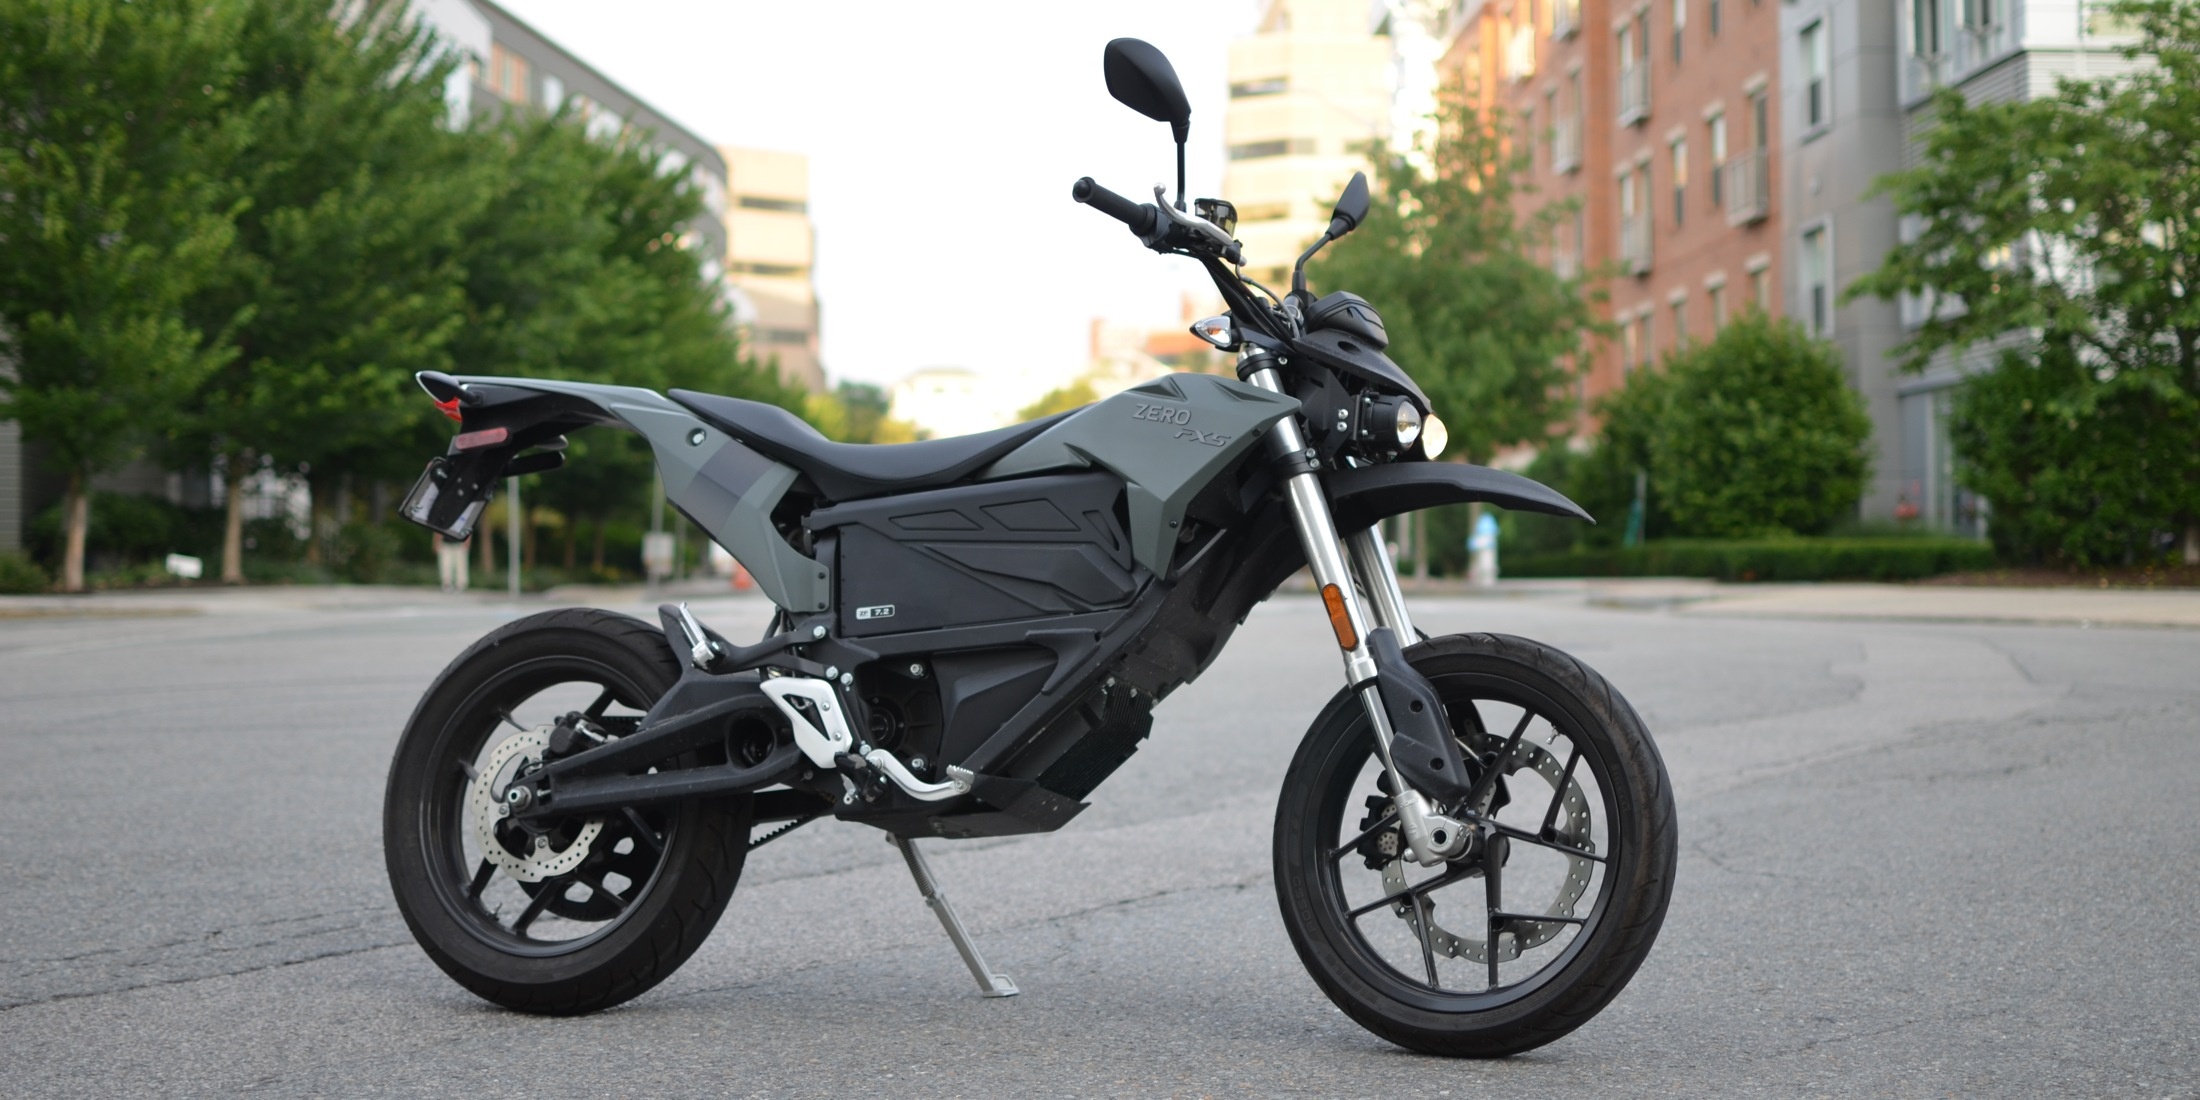 Zero Motorcycle, Auto industry, Low-cost electric motorcycle, Electrek, 2200x1100 Dual Screen Desktop